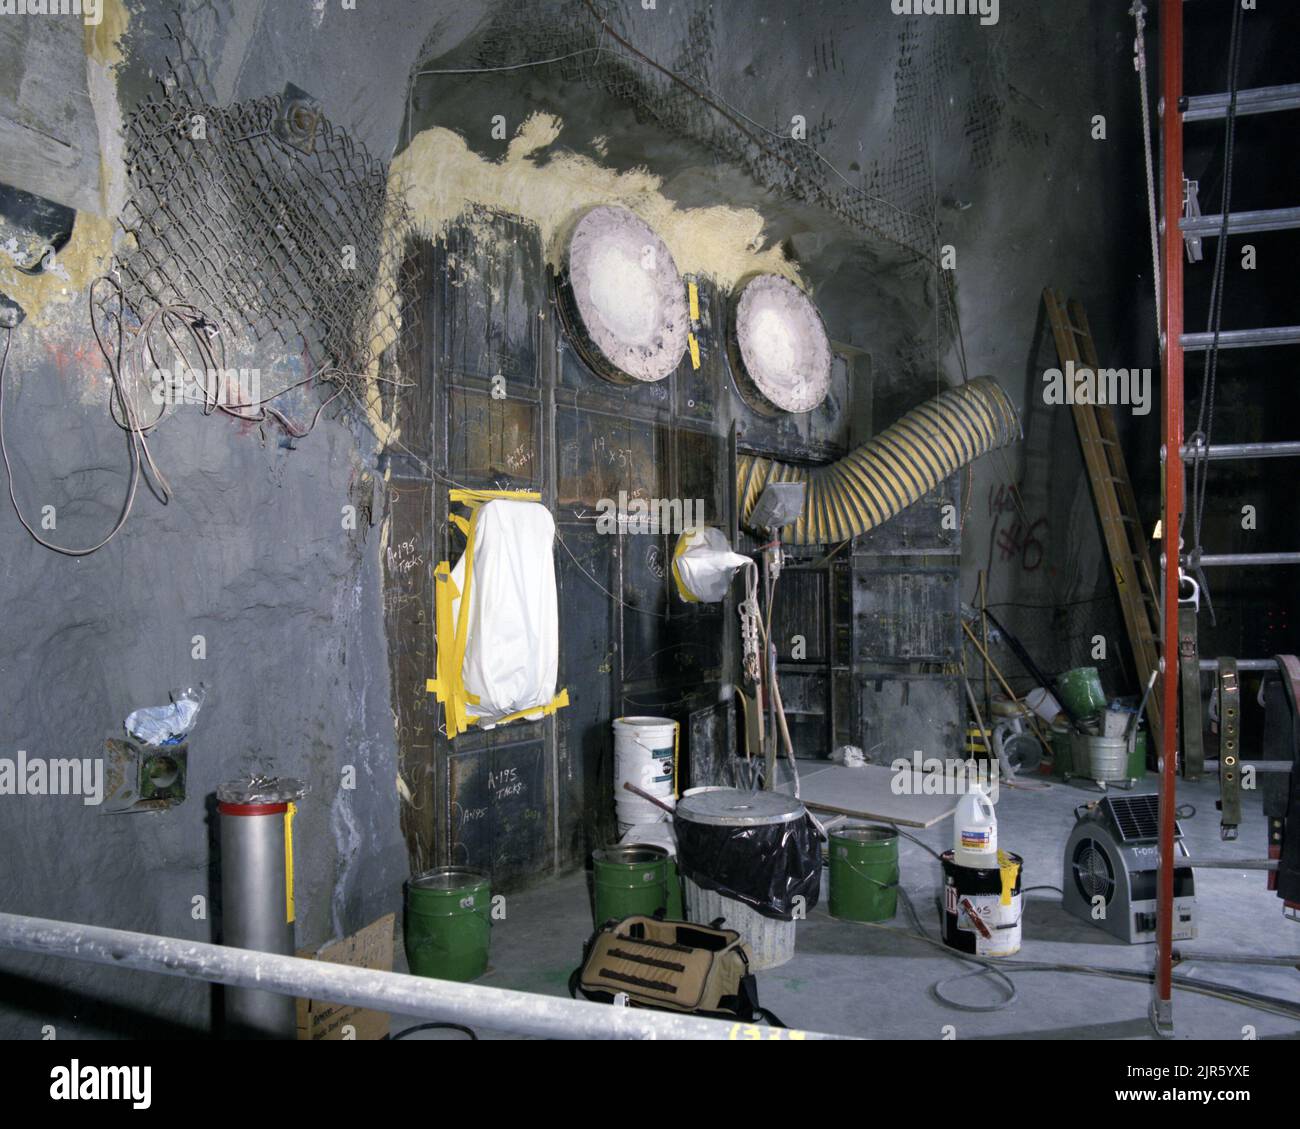 non definito. 1972 - 2012. Dipartimento di energia. Amministrazione nazionale della sicurezza nucleare. Fotografie relative al test delle armi nucleari presso il sito di test del Nevada. Foto Stock